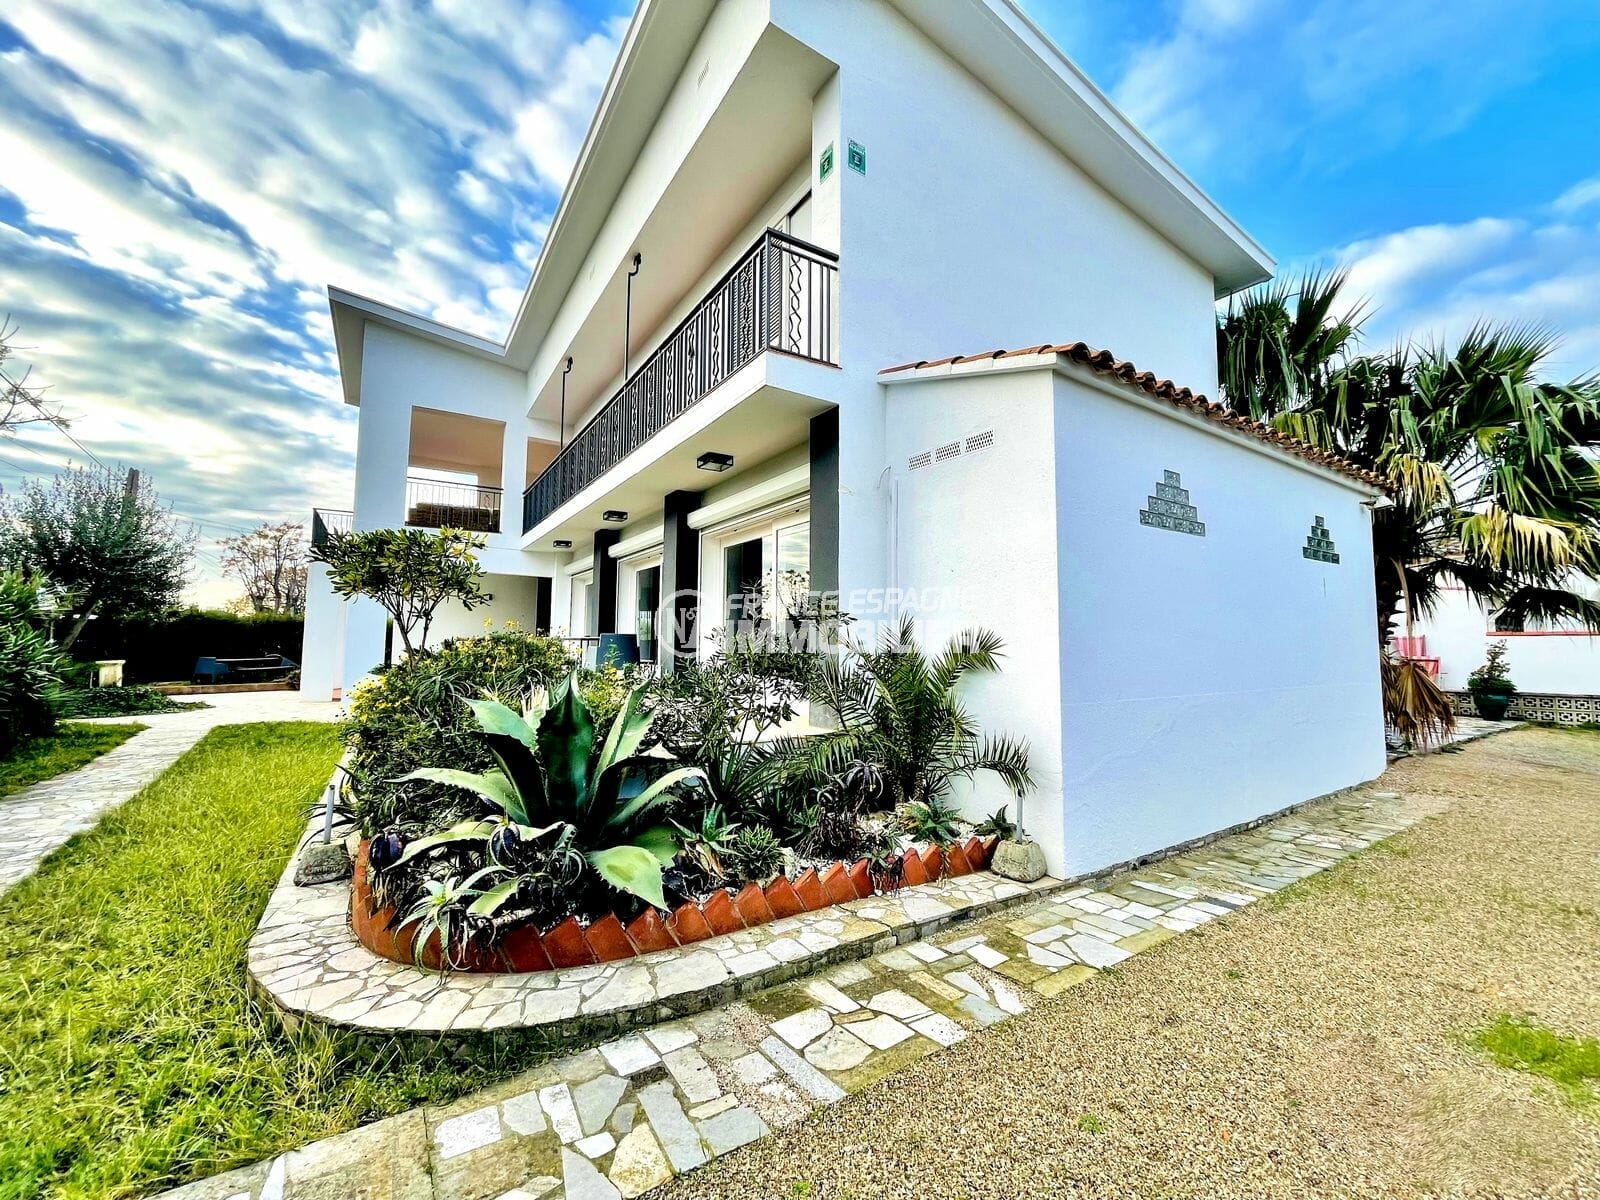 maison a vendre empuriabrava, 6 chambres 458 m², 2 terrasses, plage à 900m